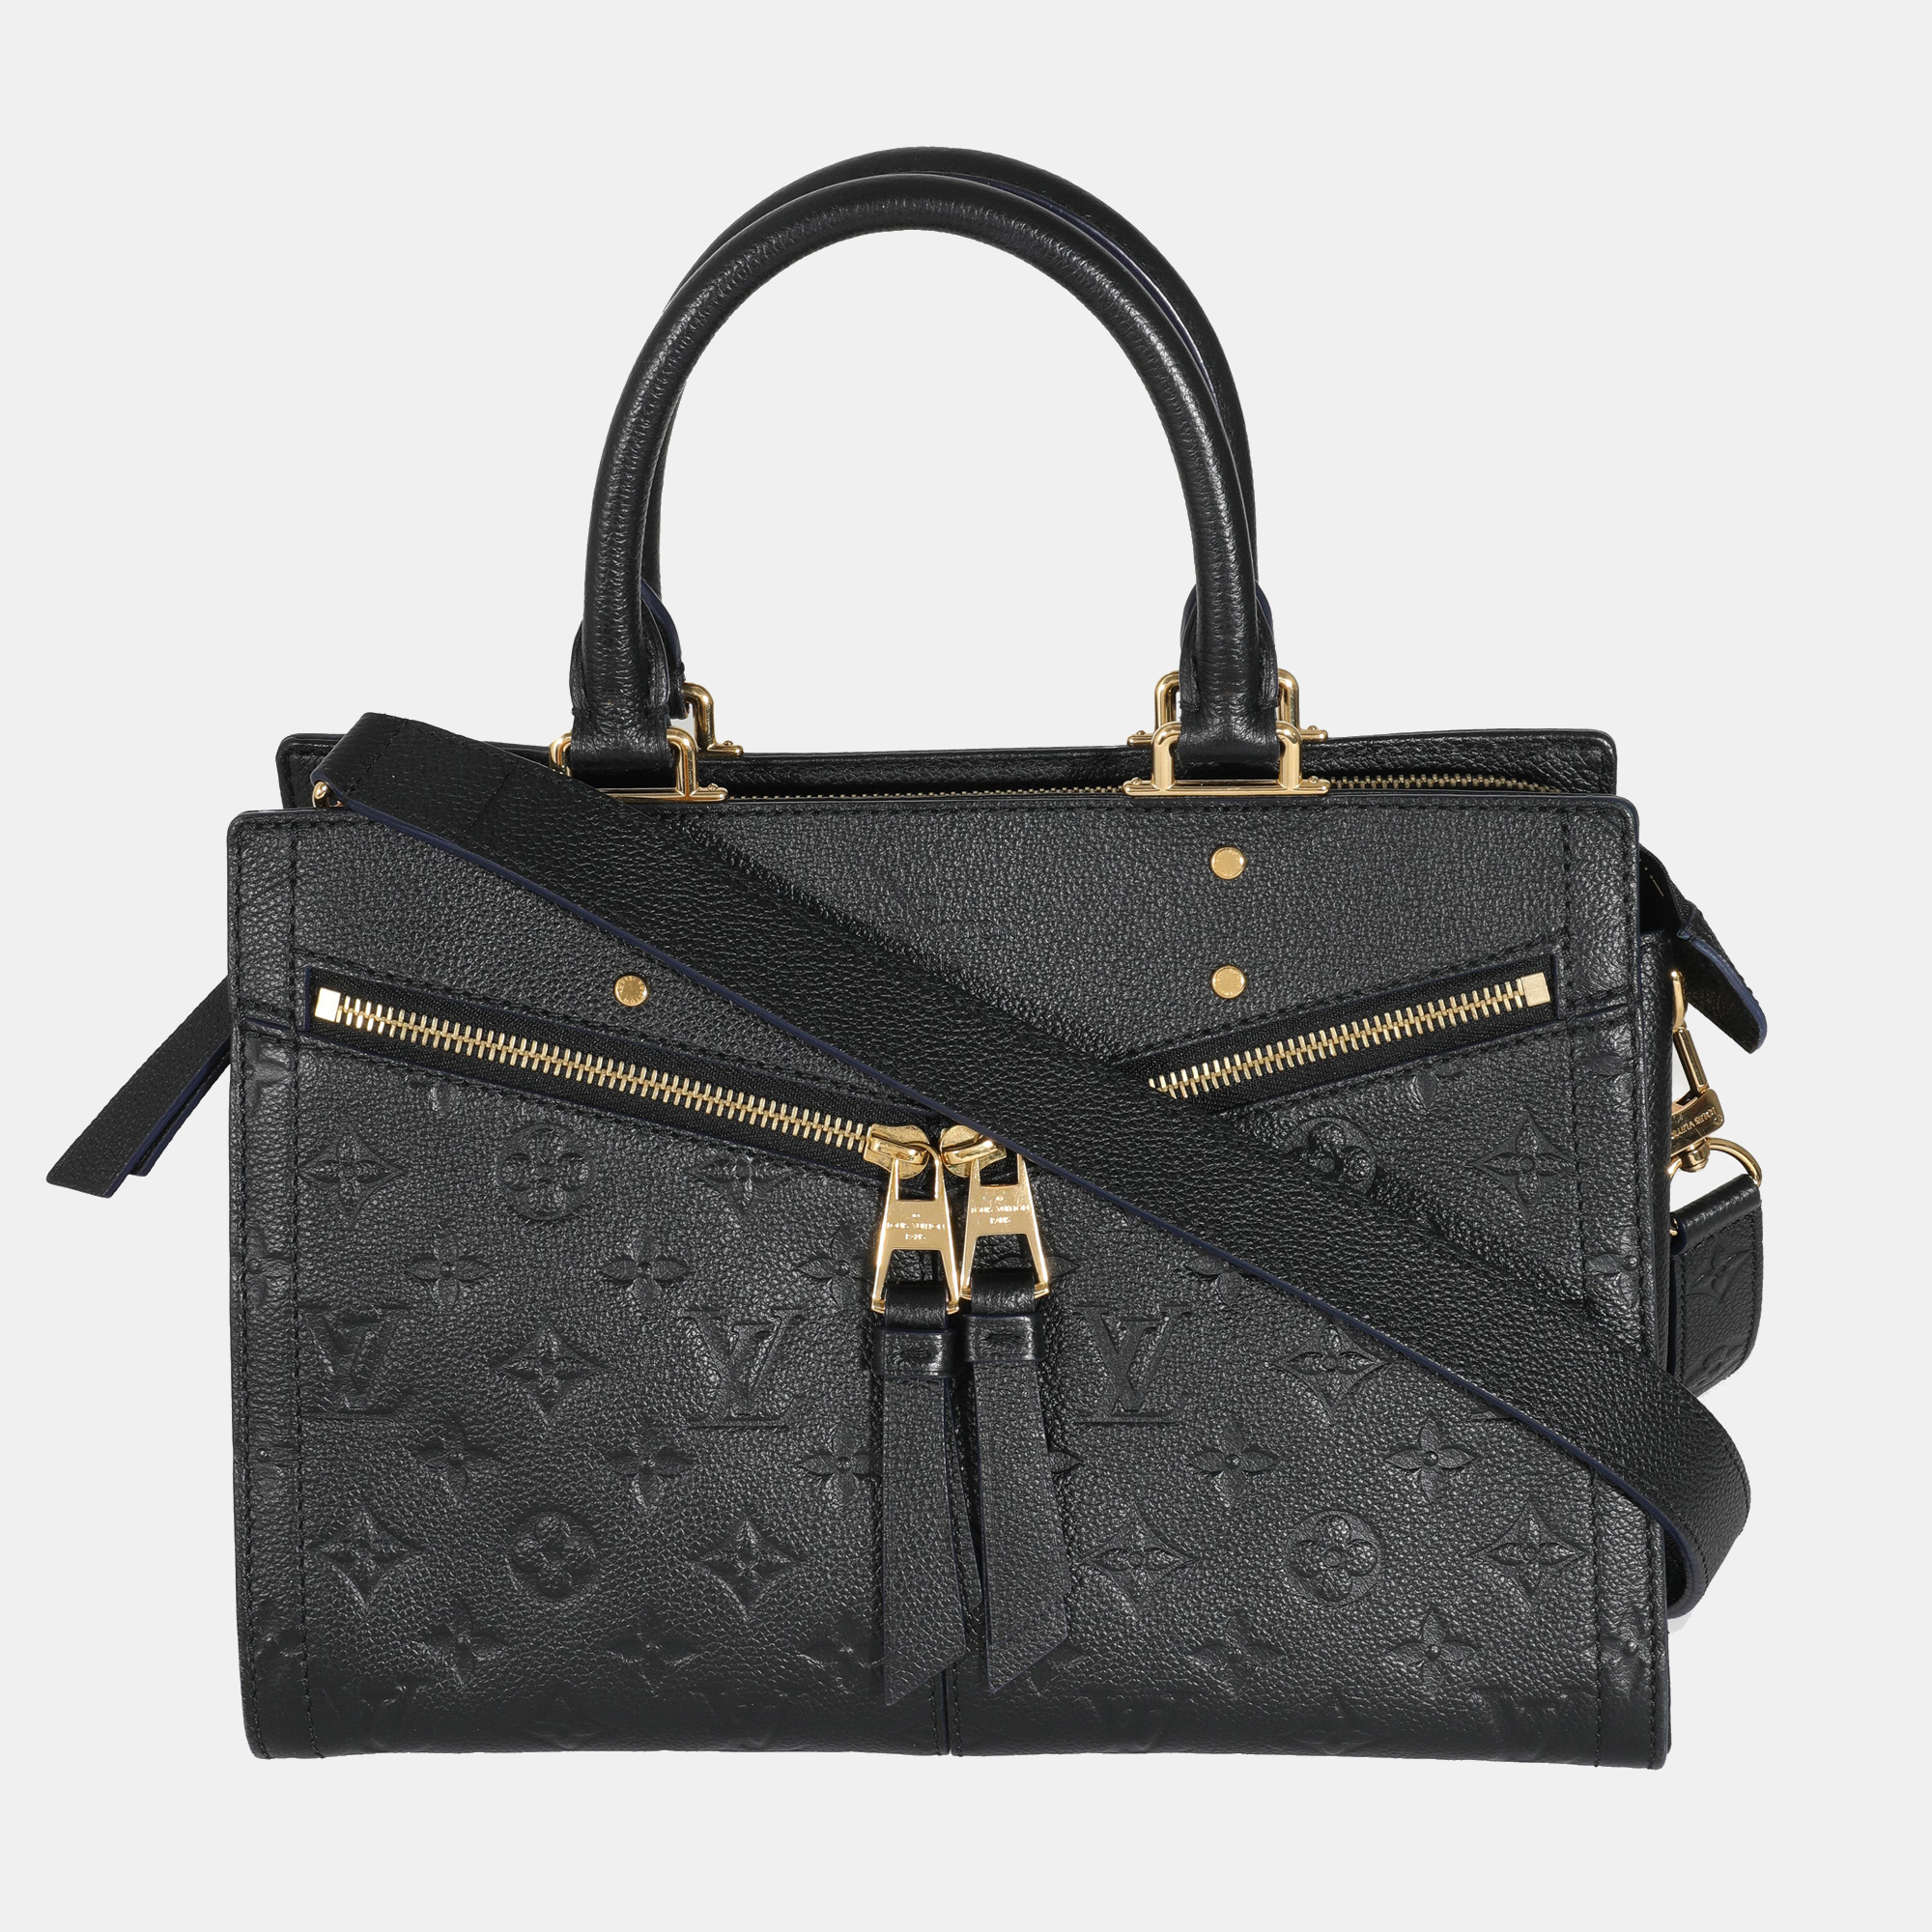 Sully Louis Vuitton Handbags for Women - Vestiaire Collective